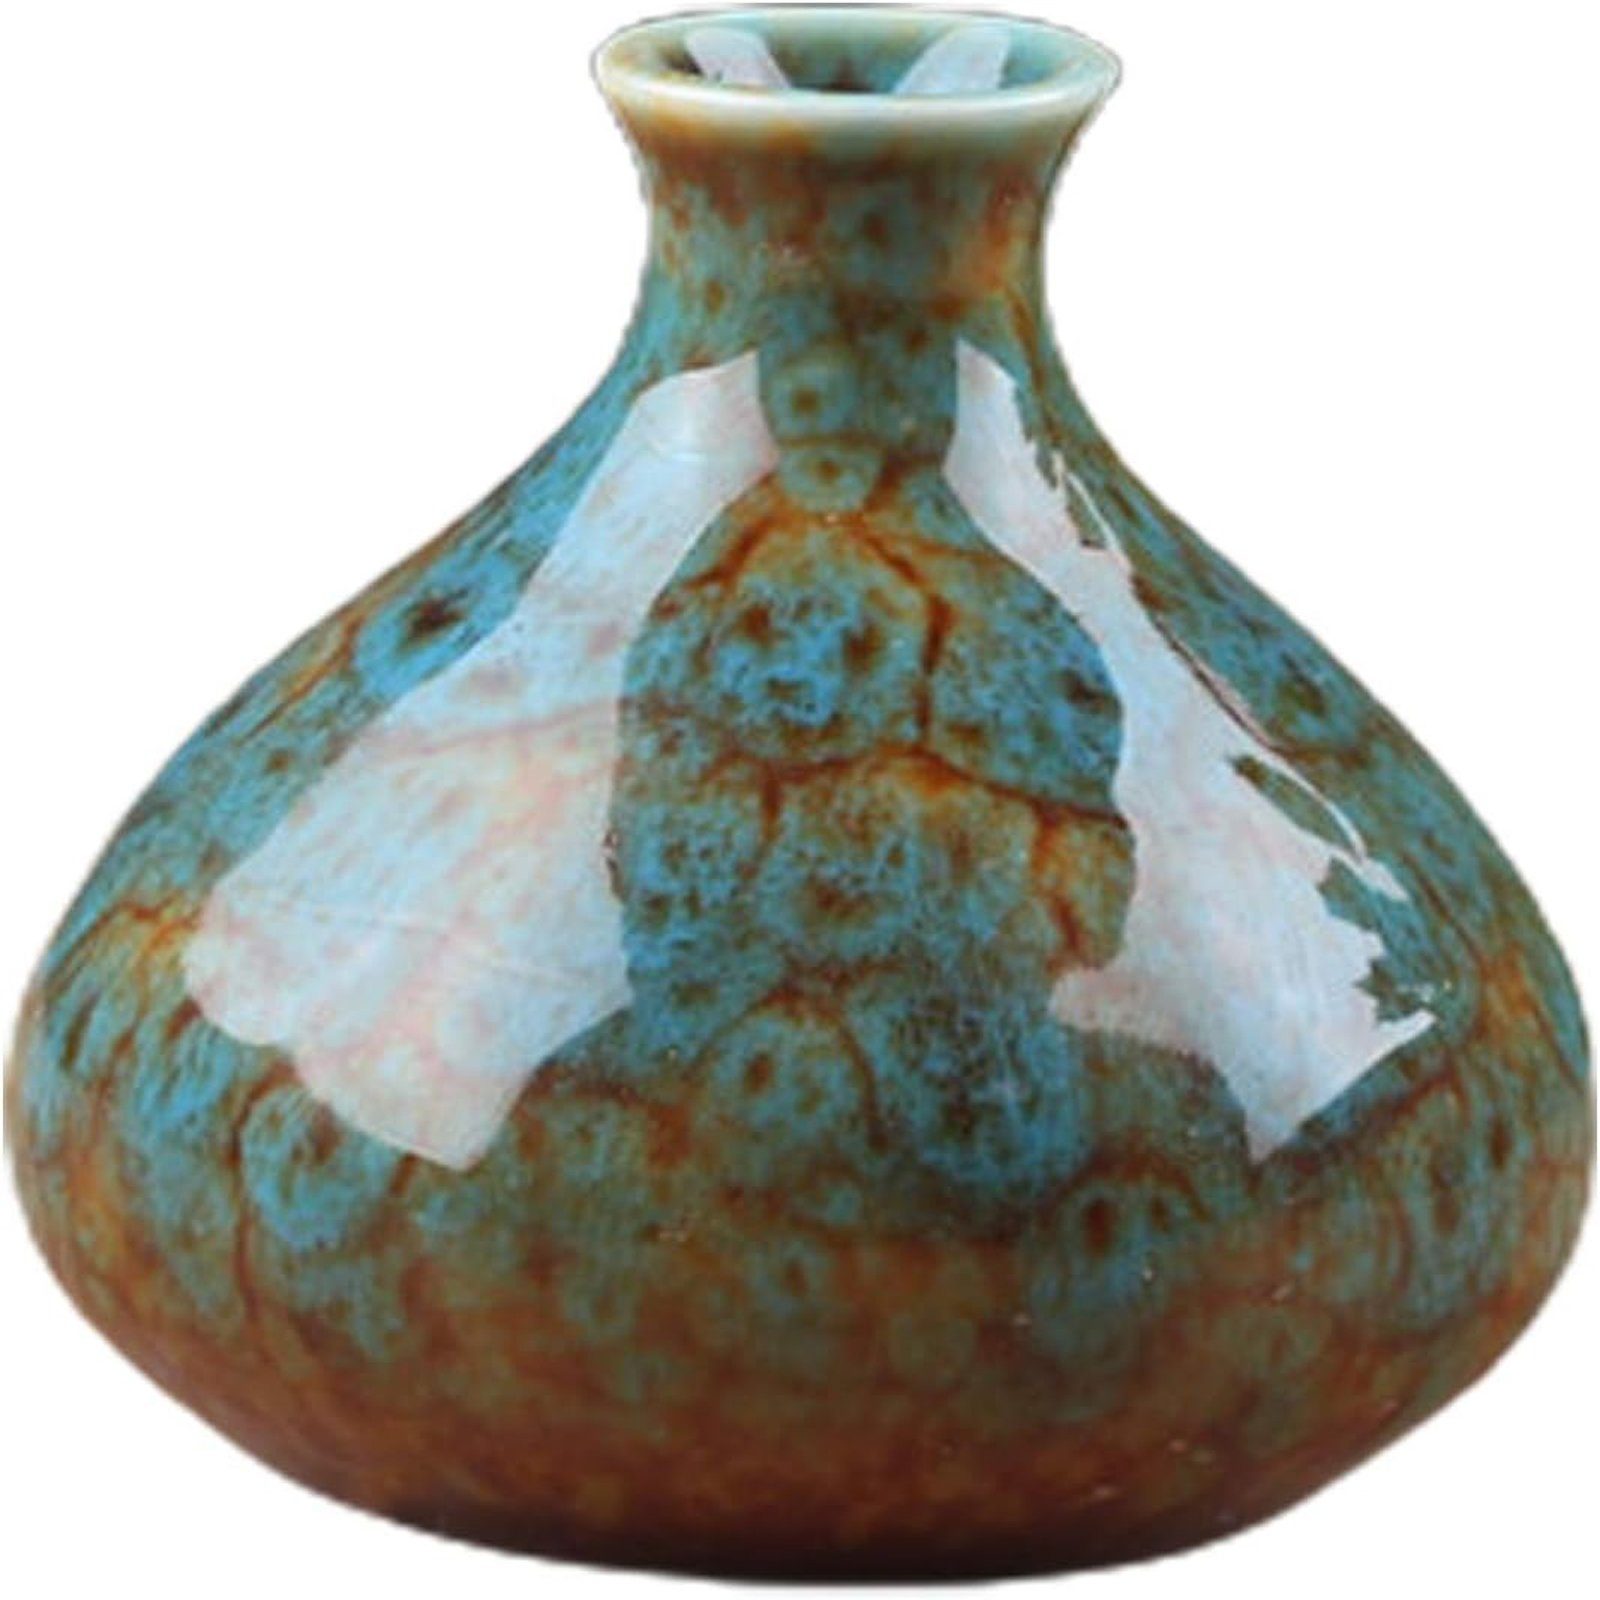 SEEZSSA Dekovase Keramikvase,Blumentopf deko für Wohnzimmer, Heimdekoration, Regal, Brenngeformte Keramik-Vase,großer Bauch, Kaliber 2.4cm,7x7.5cm,bunt Blau